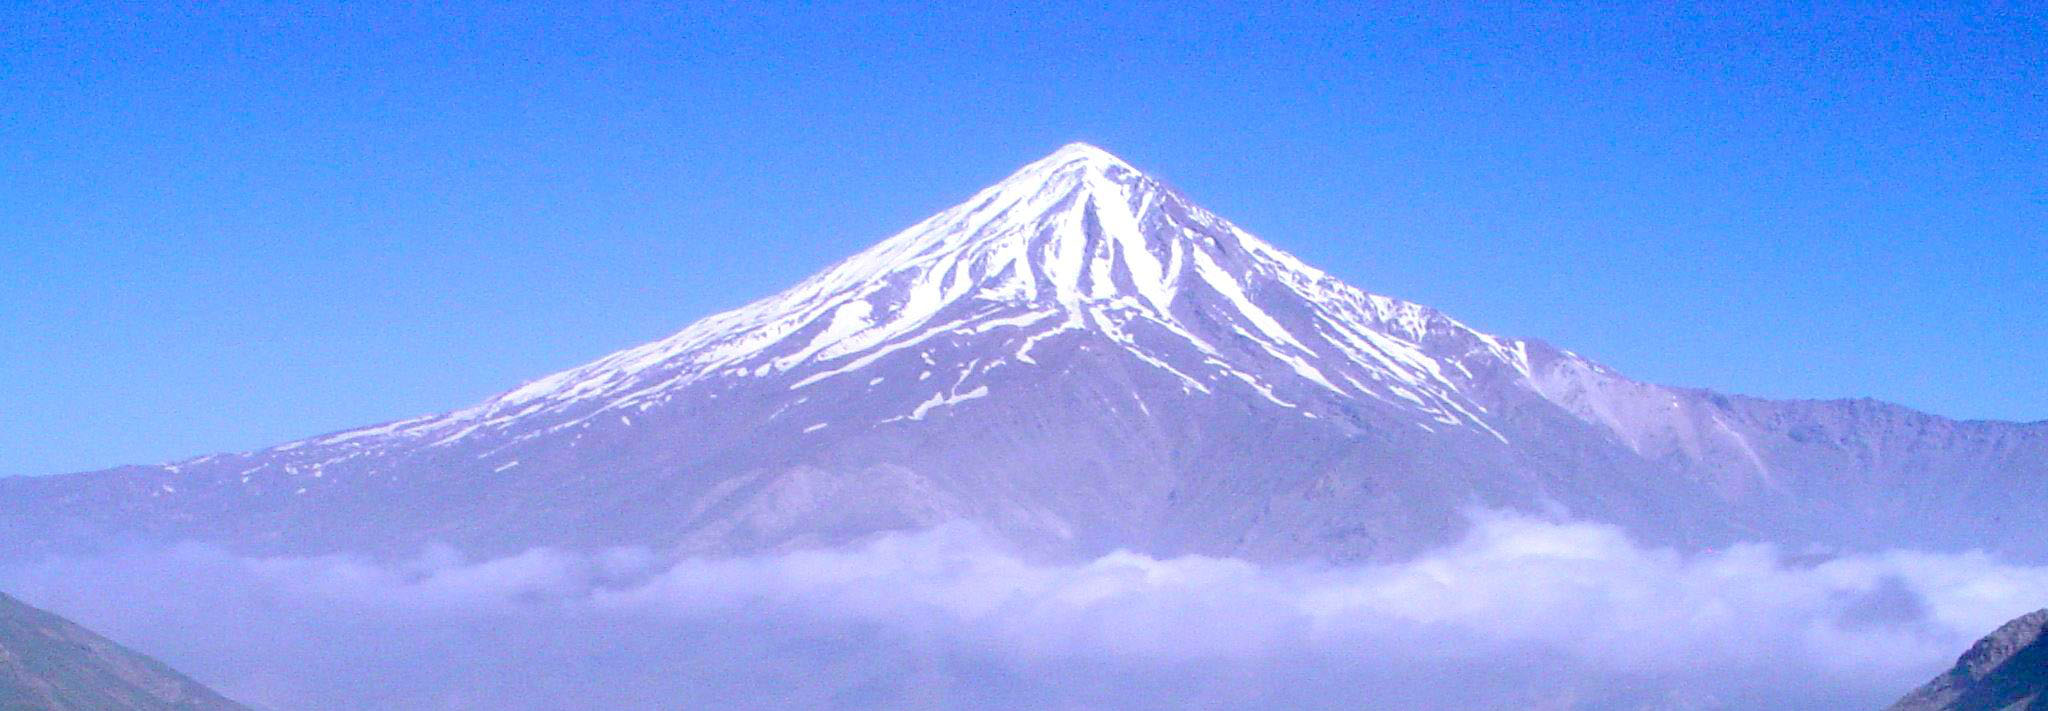 کوه دماوند